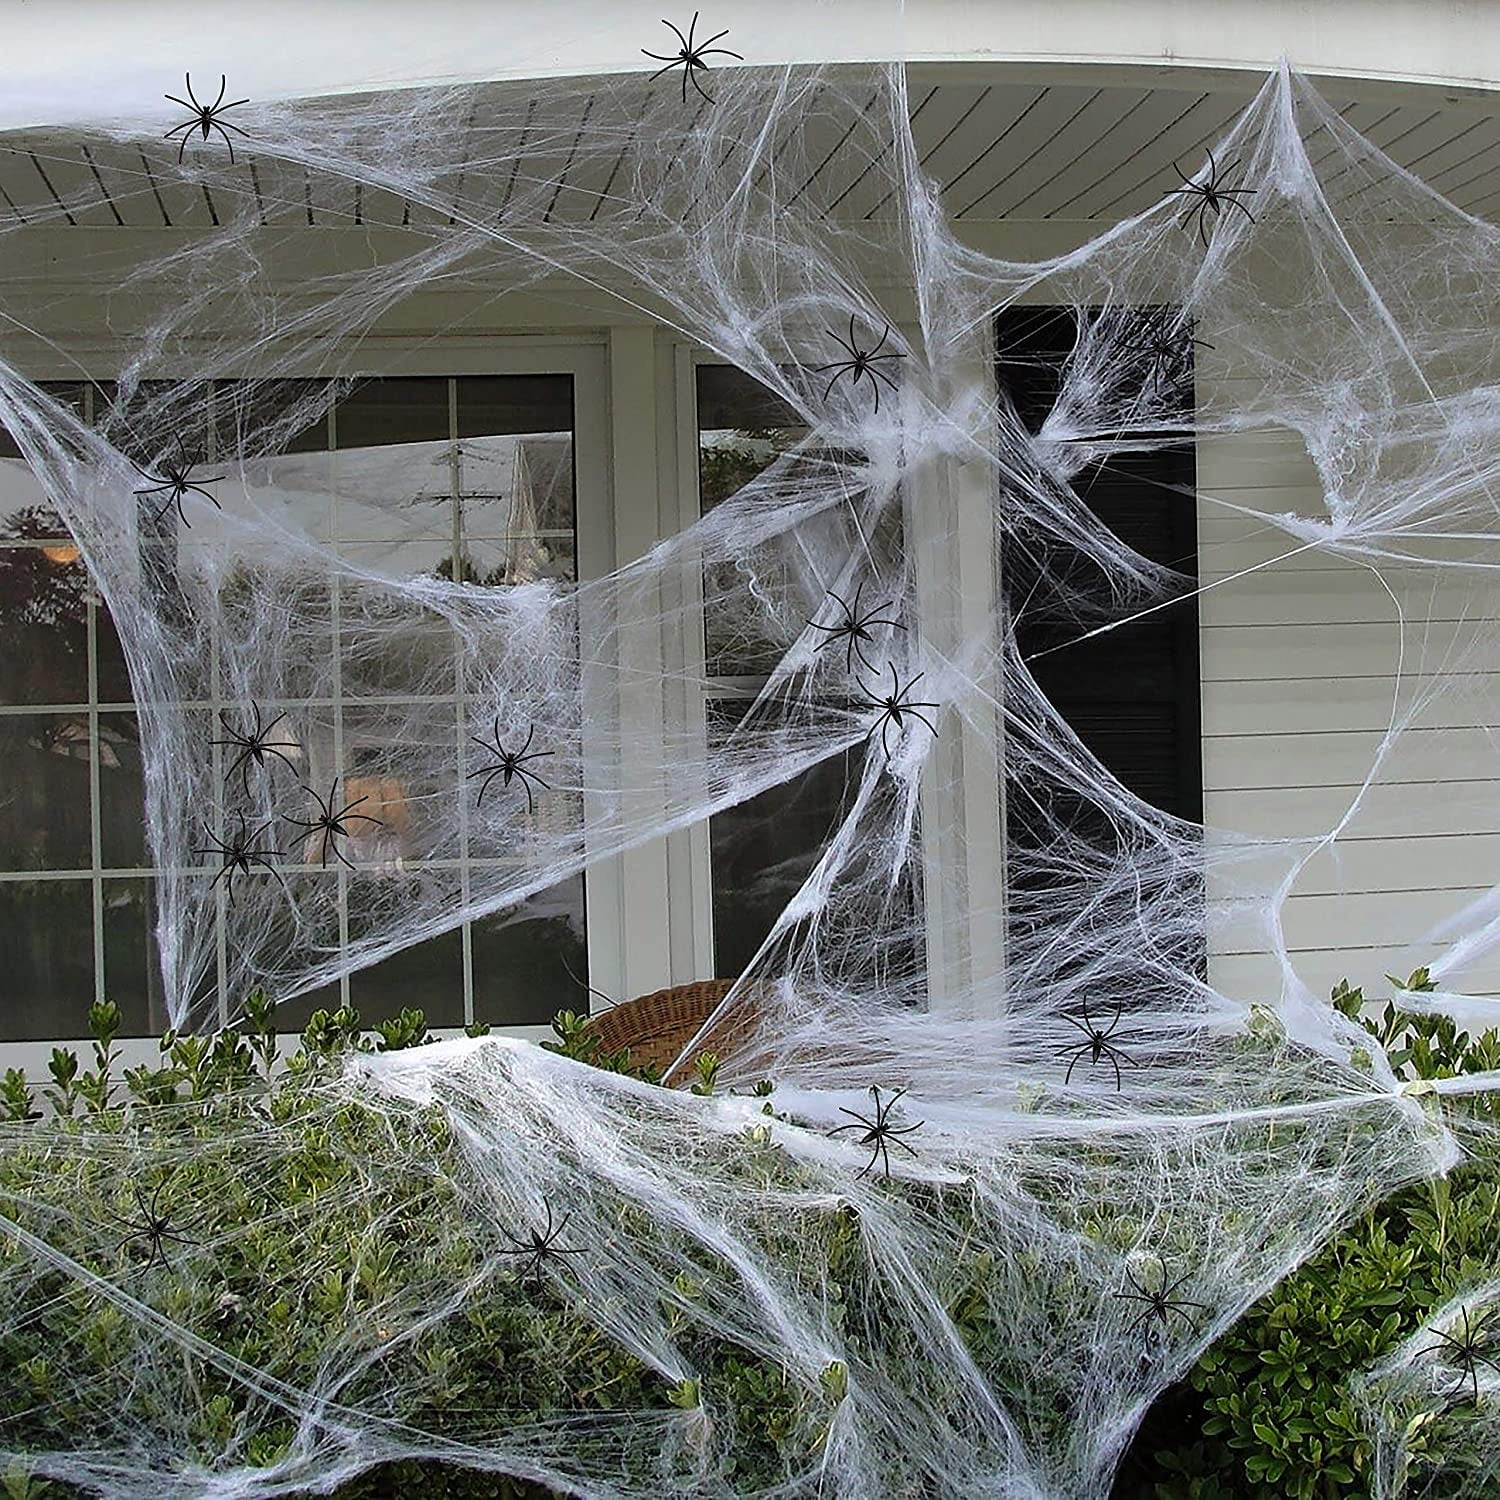 5PCS Spider Halloween Scare Decoration Haunted House Prop Indoor Outdoor Props 